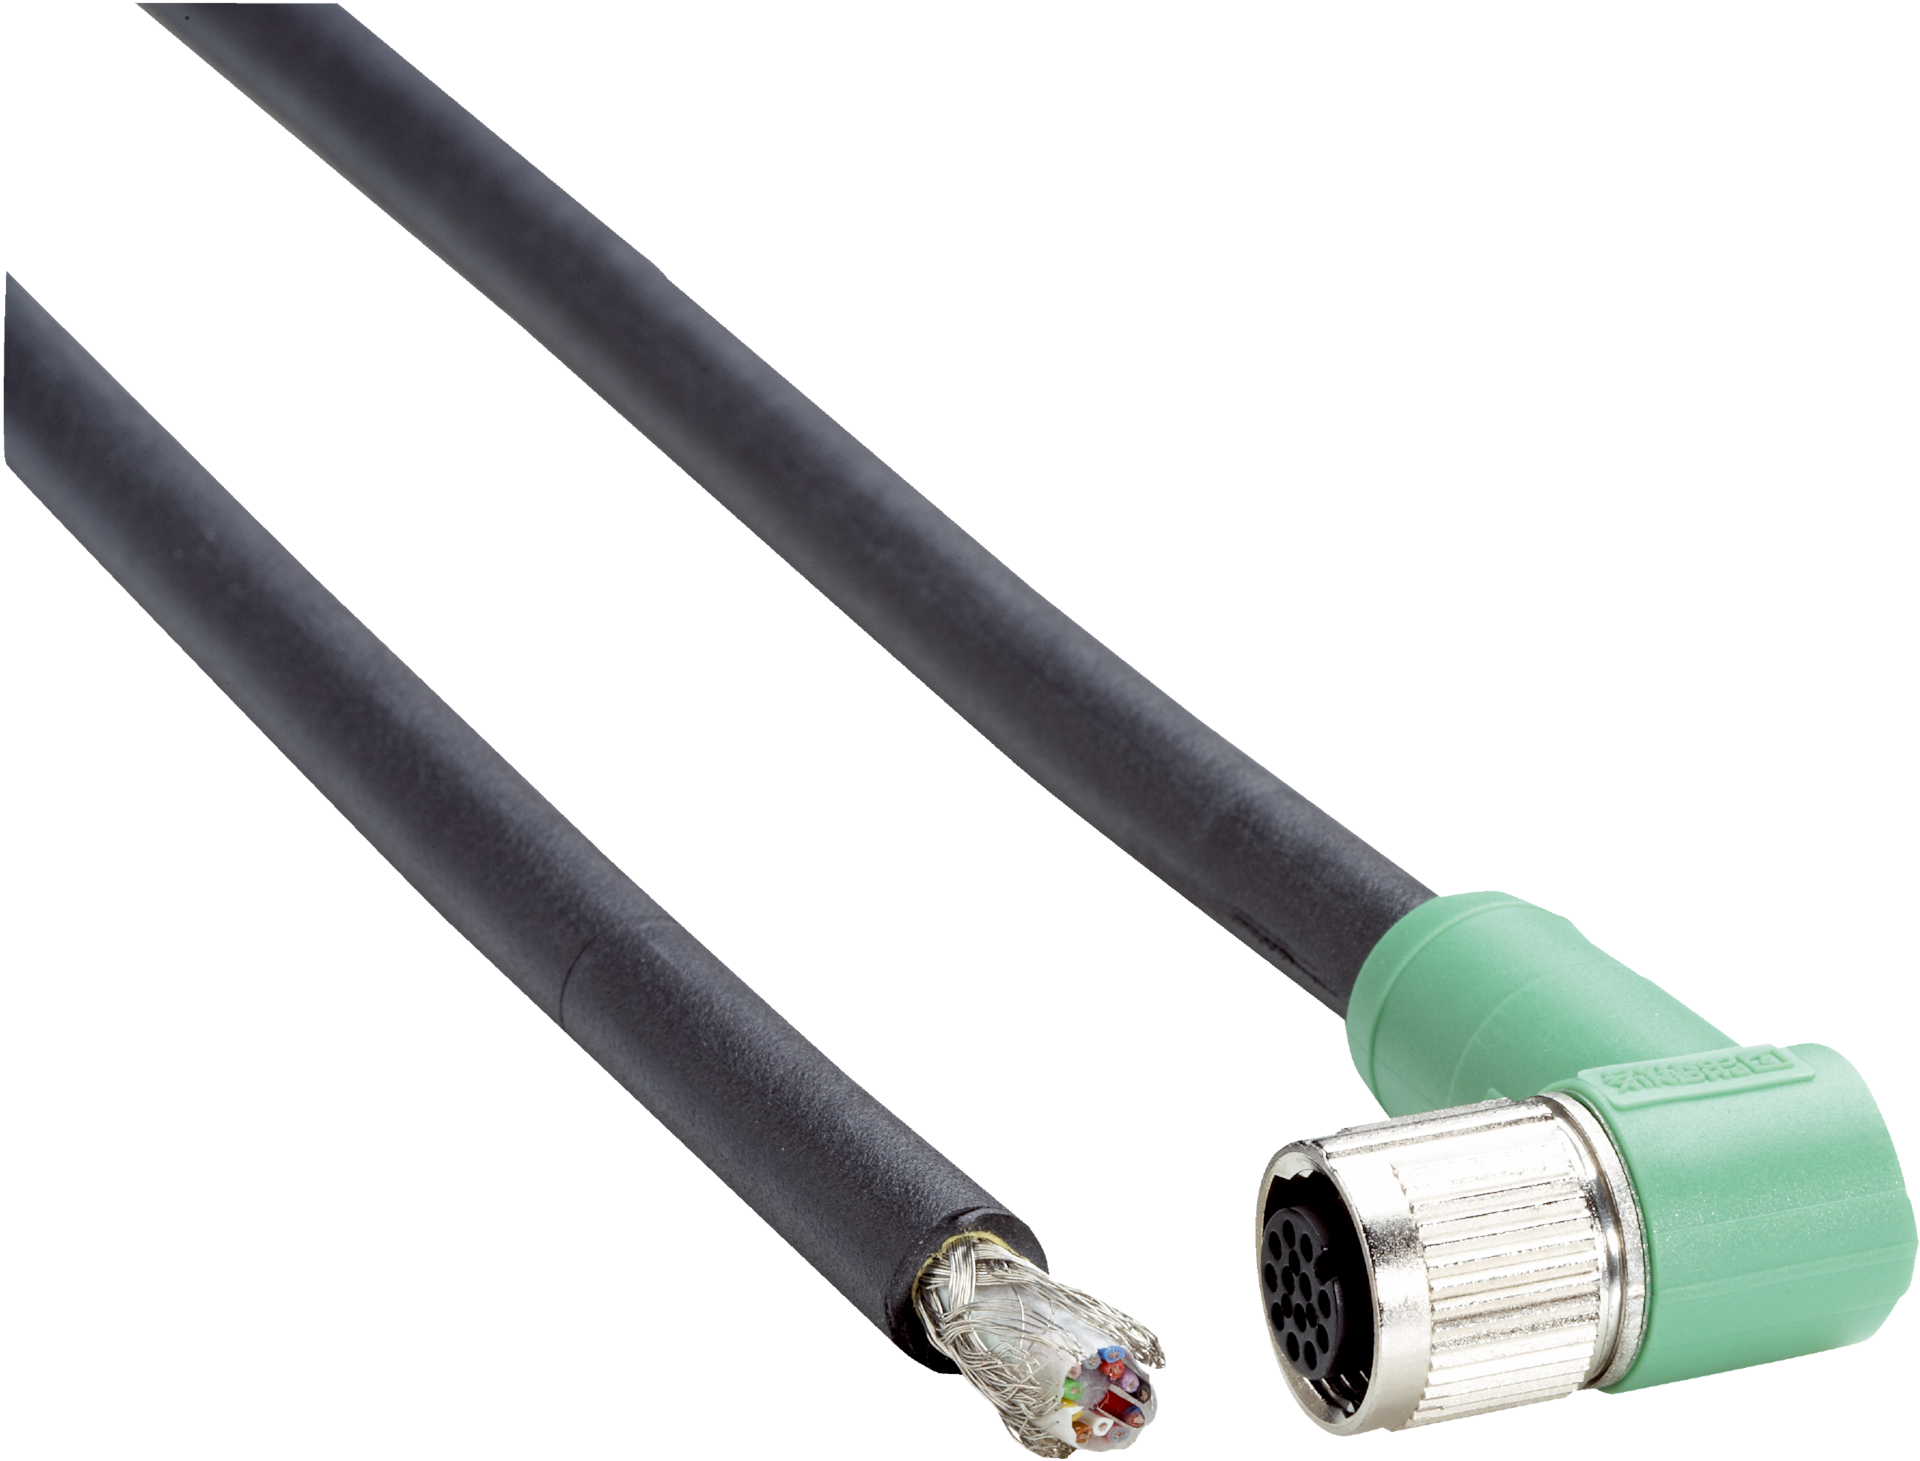 DOL-1212-W20MAC1 - Sensor/actuator cable | SICK